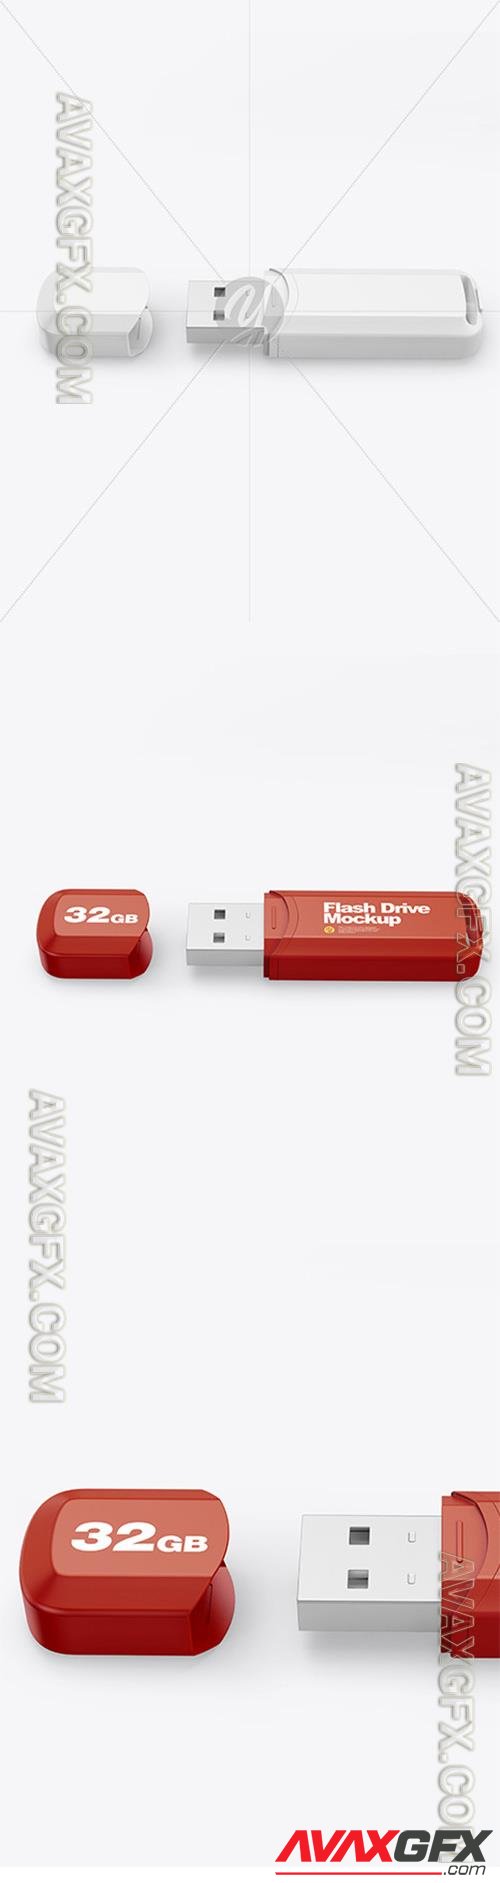 Plastic USB Flash Drive Mockup 87790 TIF